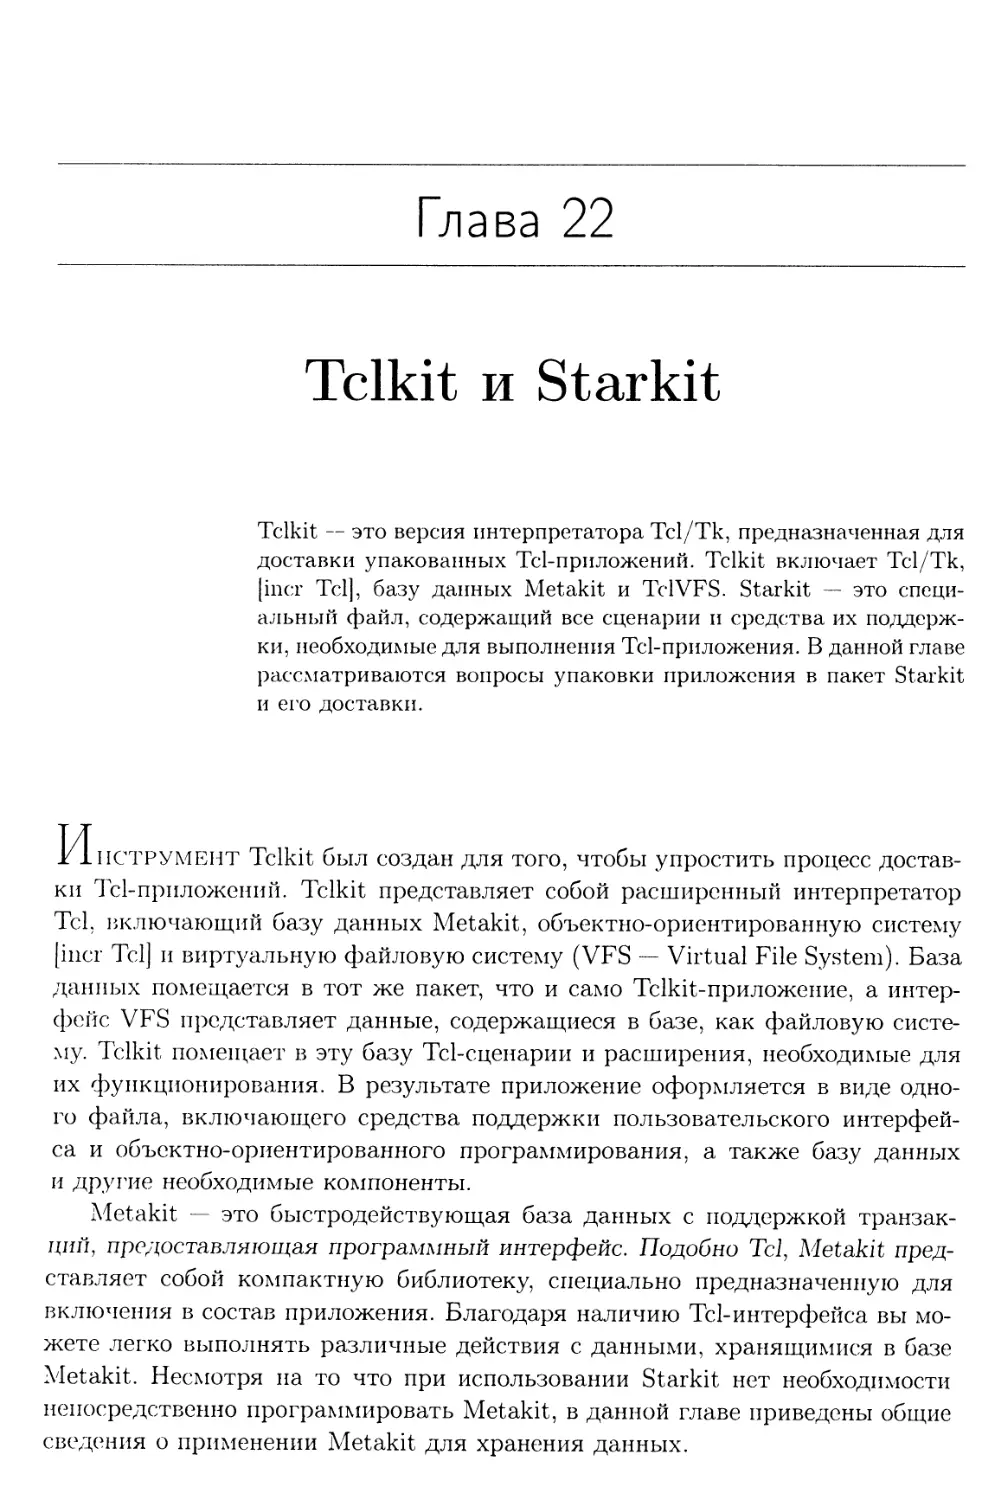 Глава 22. Tclkit и Starkit